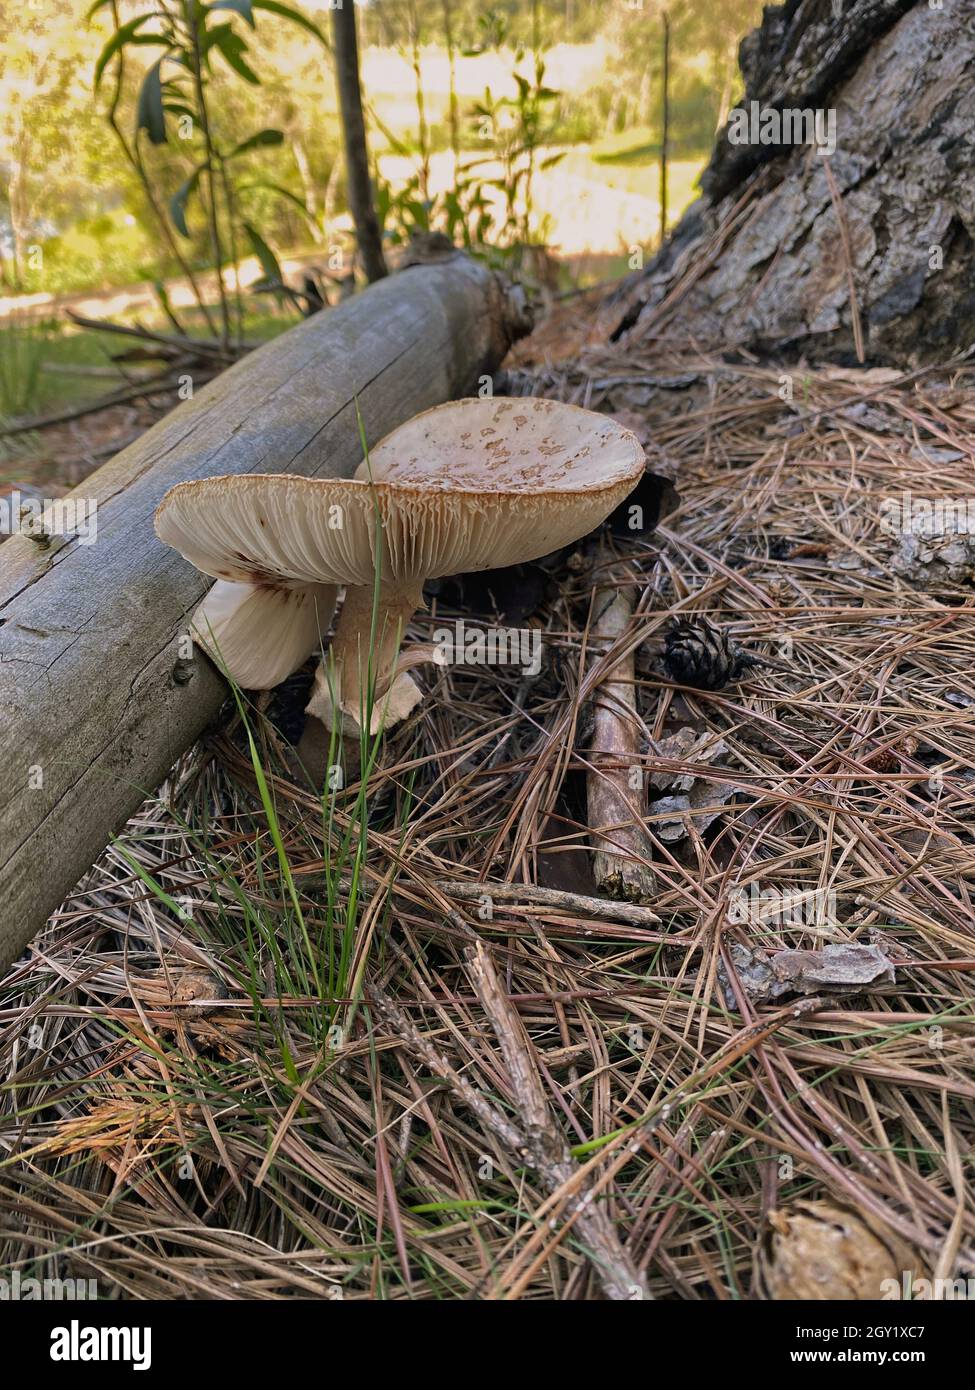 Funghi in natura. Funghi commestibili e anche velenosi hanno benefiche funzioni ecologiche per la foresta e l'ambiente. Foto Stock